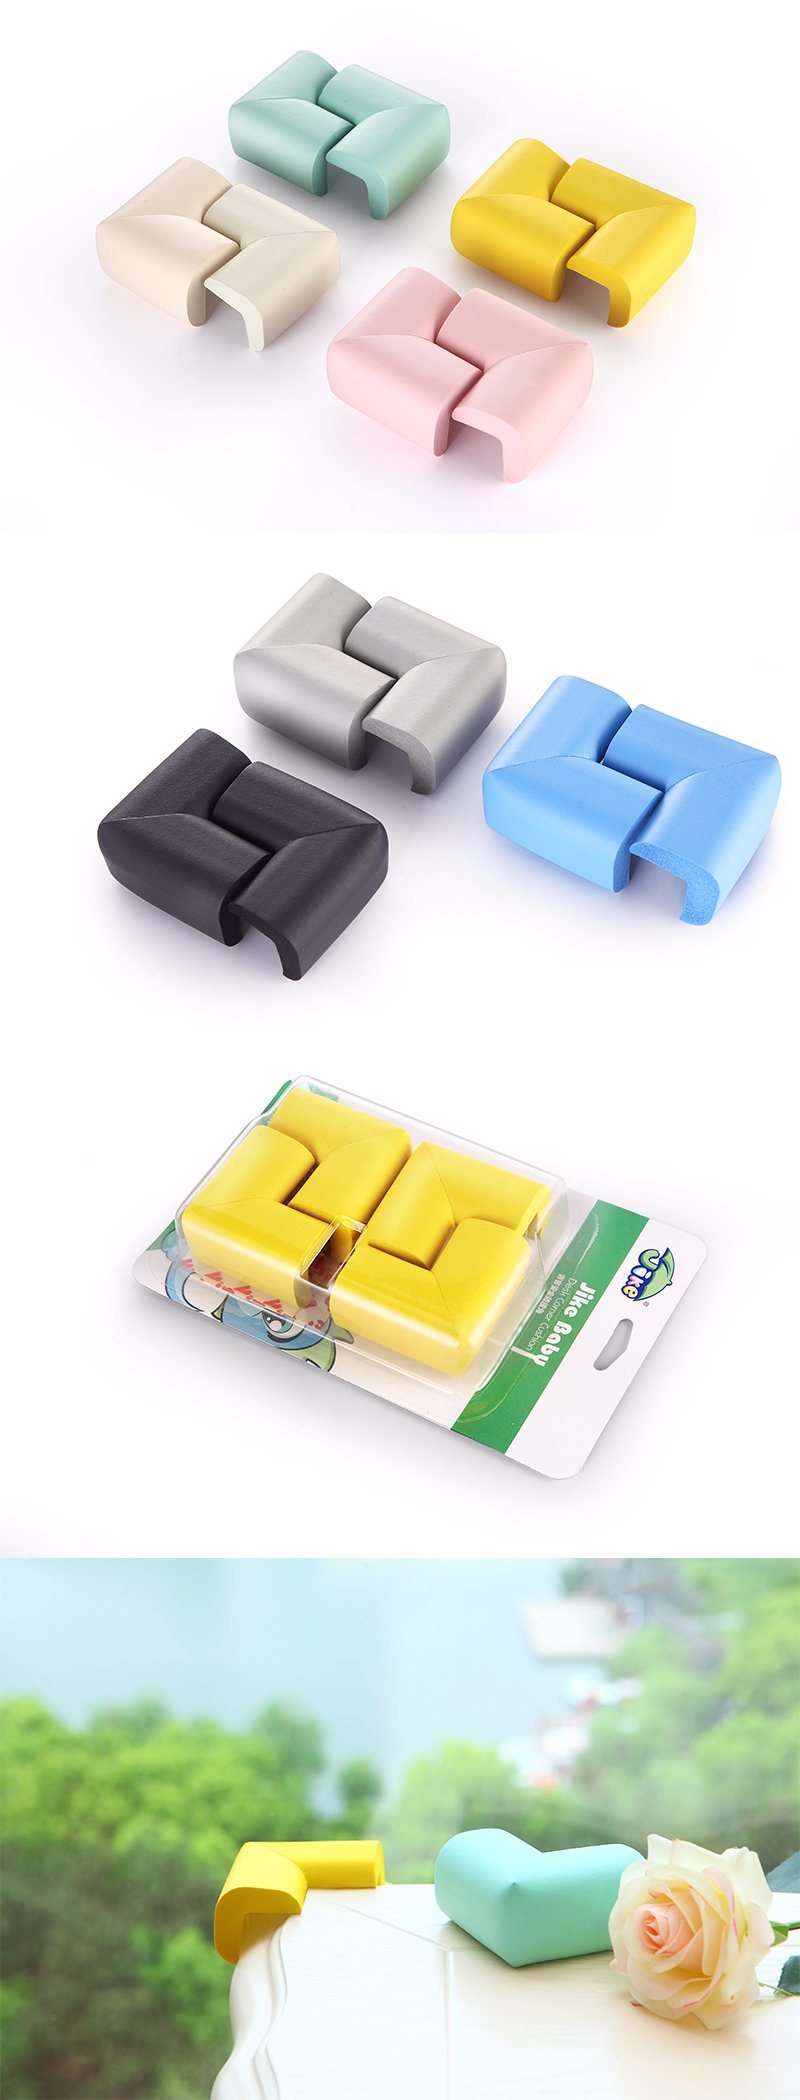 Jike OEM High Density NBR Corner Guards Cushion Decorative Cushions